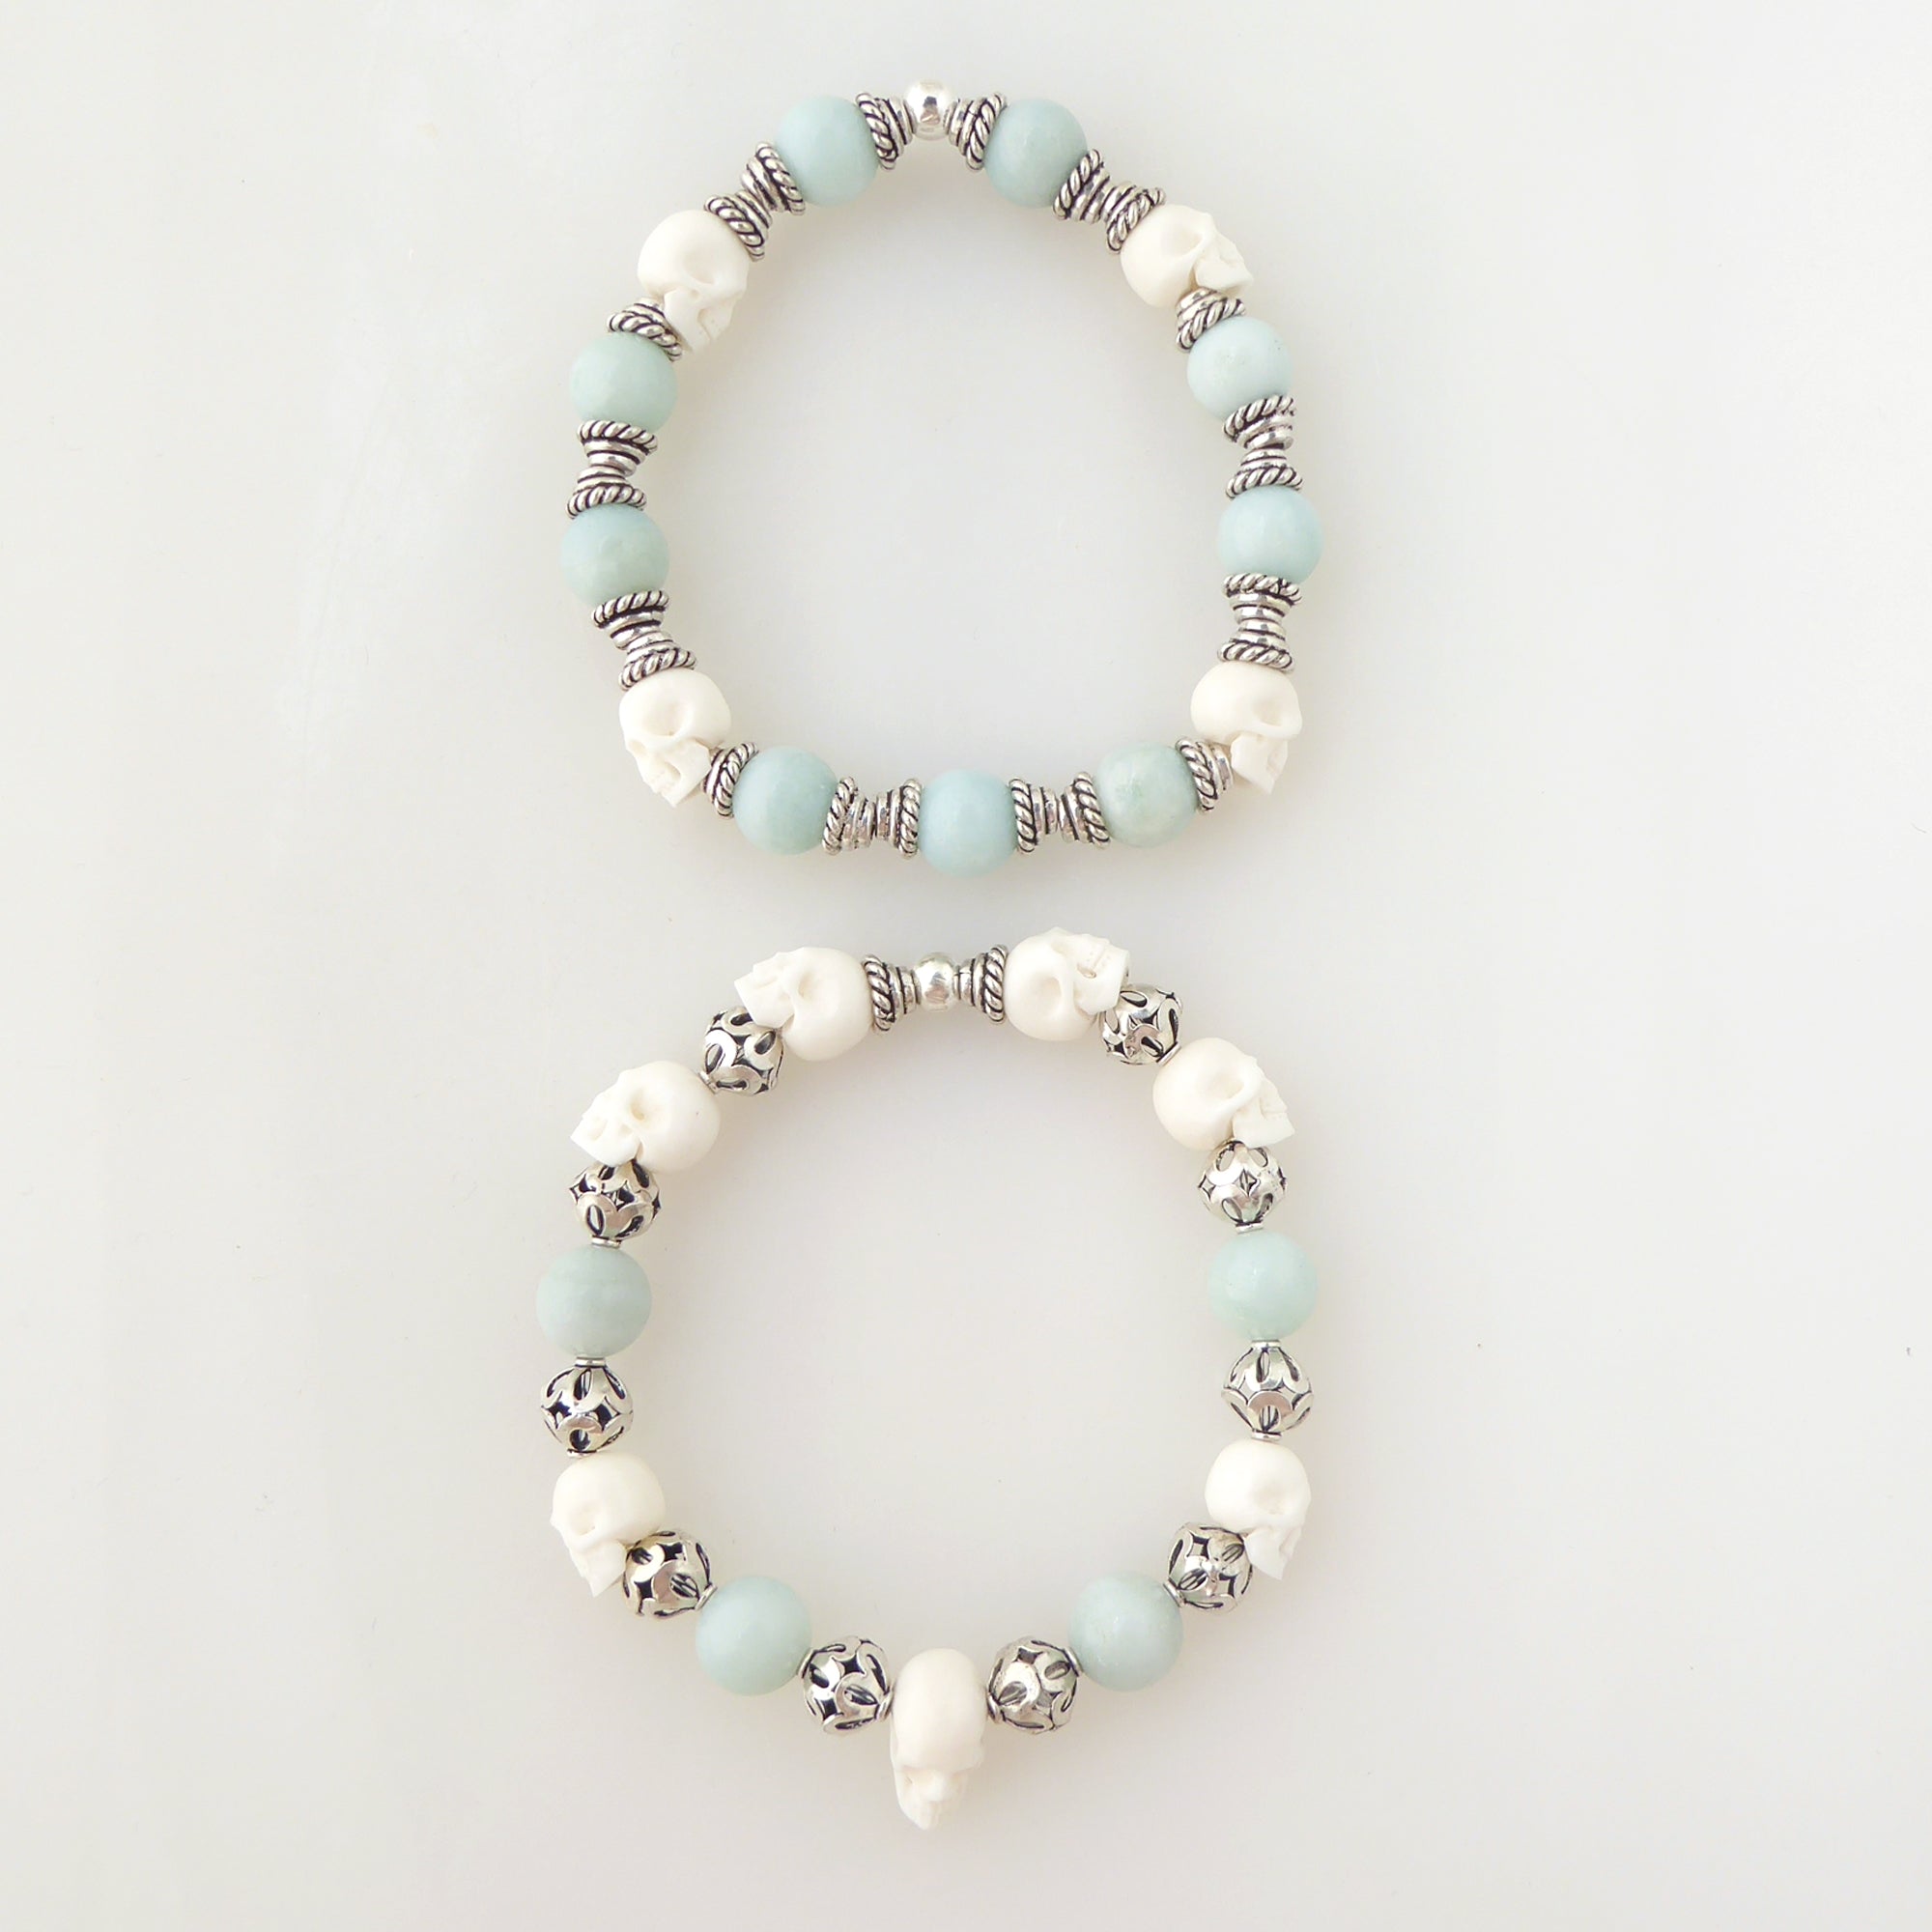 Jade and skull bracelet set by Jenny Dayco 5